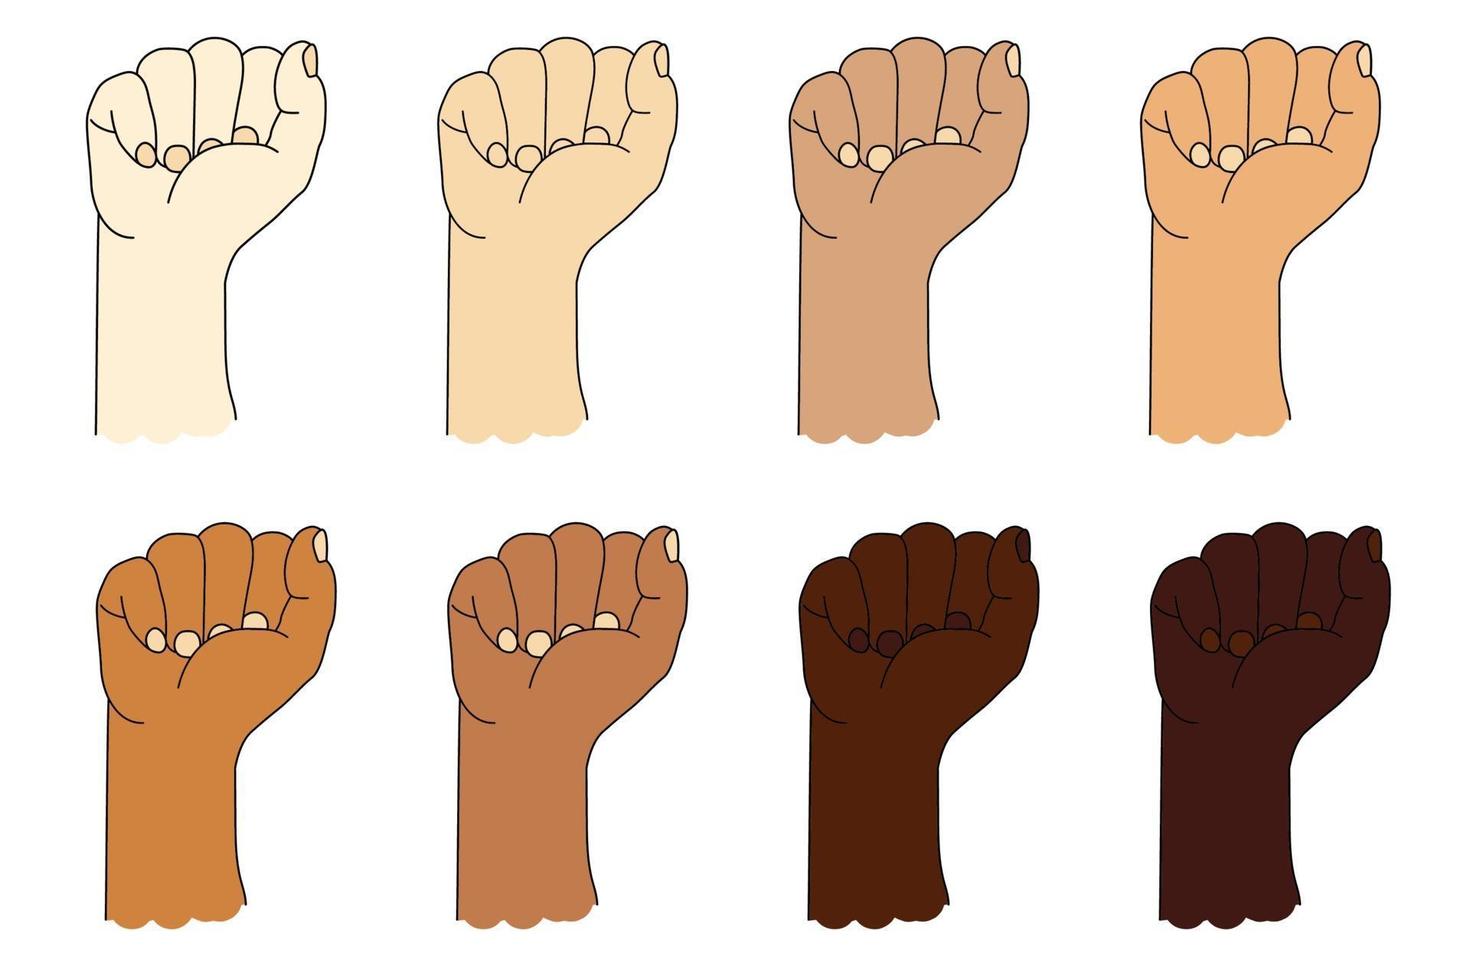 Sammlung menschlicher ethnischer Hände mit unterschiedlicher Hautfarbe. Handbewegung. erhobene Faust oder geballte Faust. Vektorillustration lokalisiert auf Weiß vektor